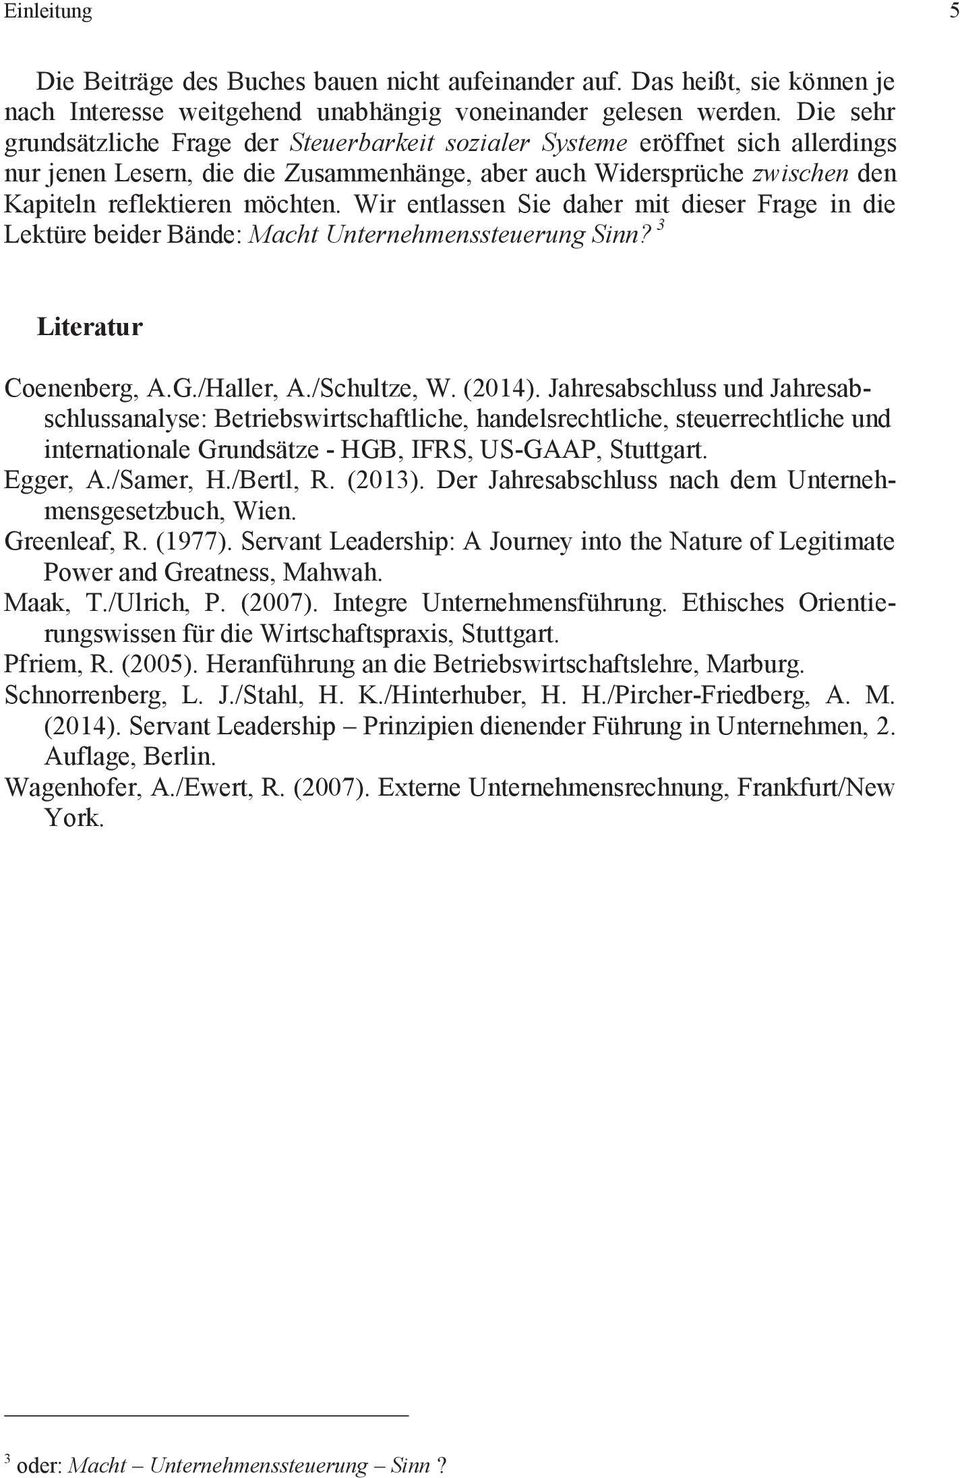 Wir entlassen Sie daher mit dieser Frage in die Lektüre beider Bände: Macht Unternehmenssteuerung Sinn? 3 Literatur Coenenberg, A.G./Haller, A./Schultze, W. (2014).